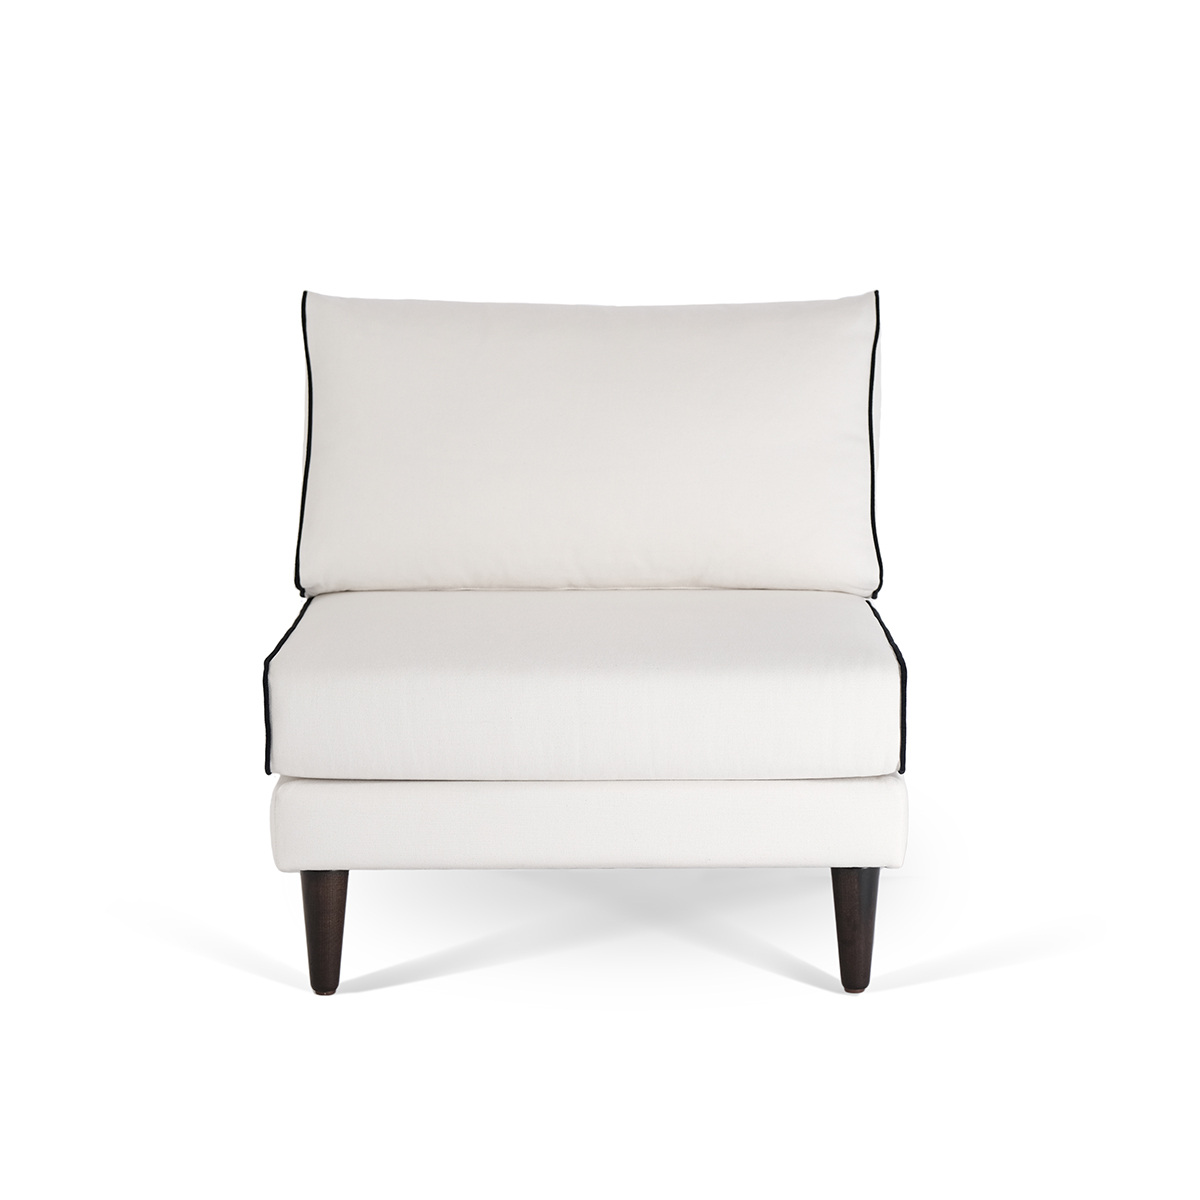 Flip Chair Noa, White / Black - H80 x W80 x D75 cm - Cotton / Wood - image 2